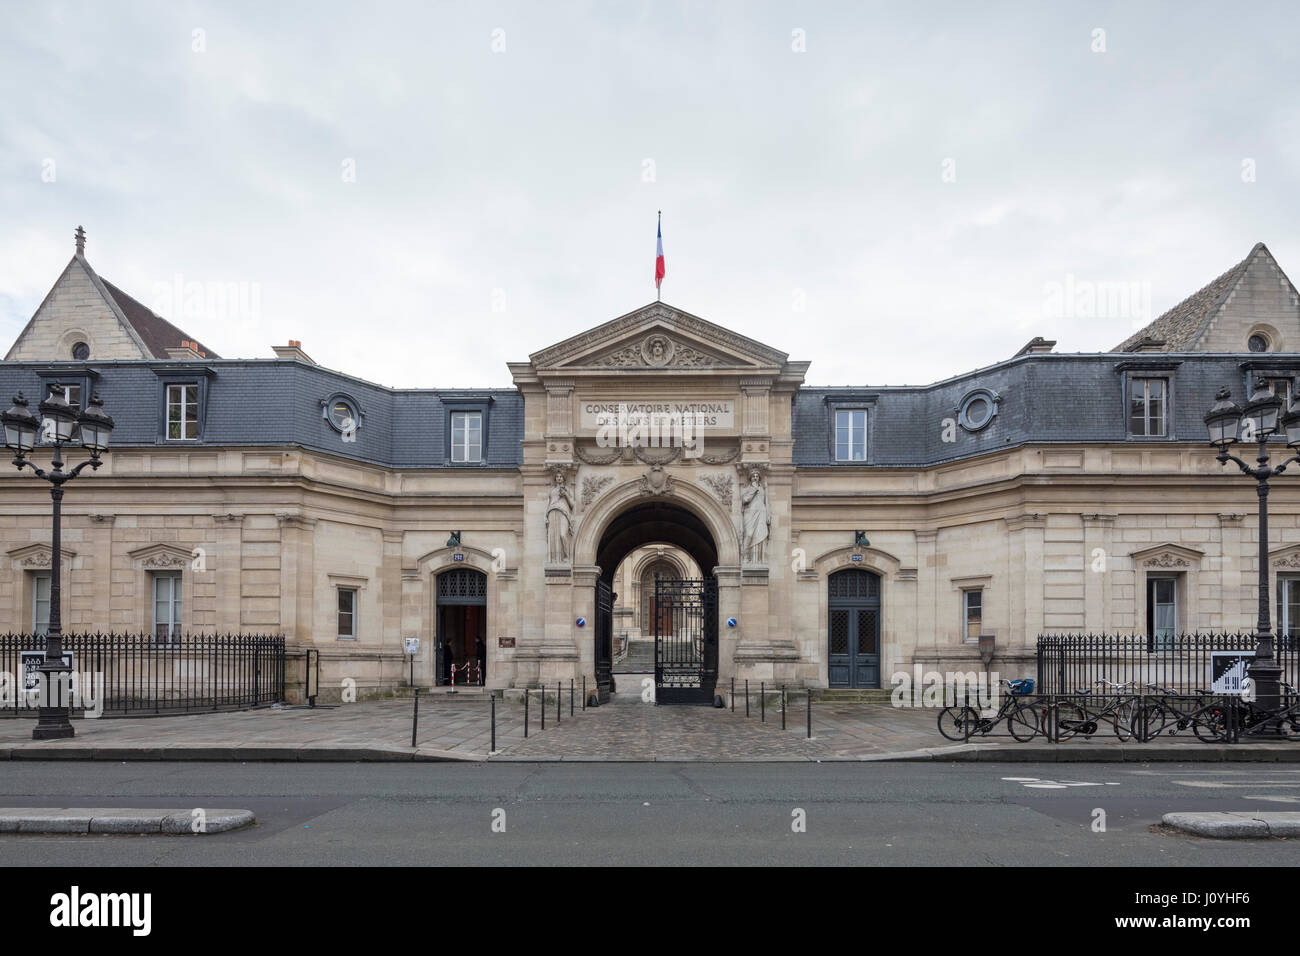 La façade du Conservatoire National des Arts et Métiers (CNAM), ou Conservatoire National des Arts et Métiers, Paris, France Banque D'Images